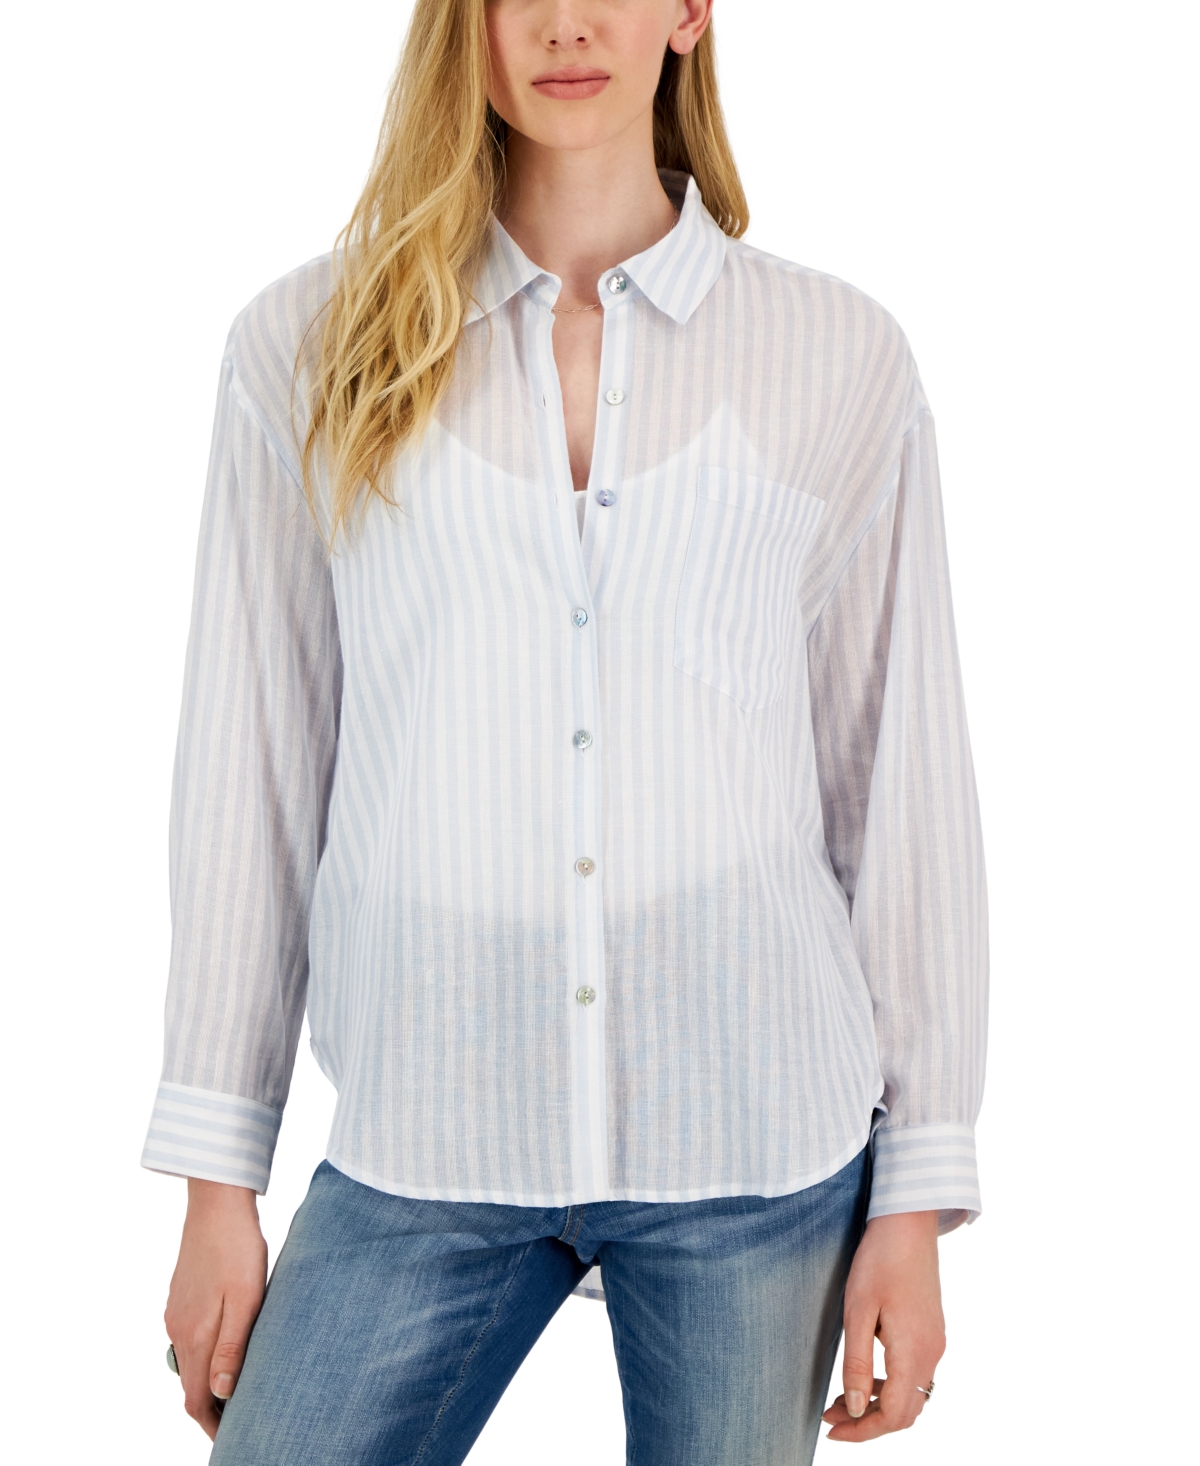 Crave Fame Juniors' Cotton Striped Button-Up Shirt